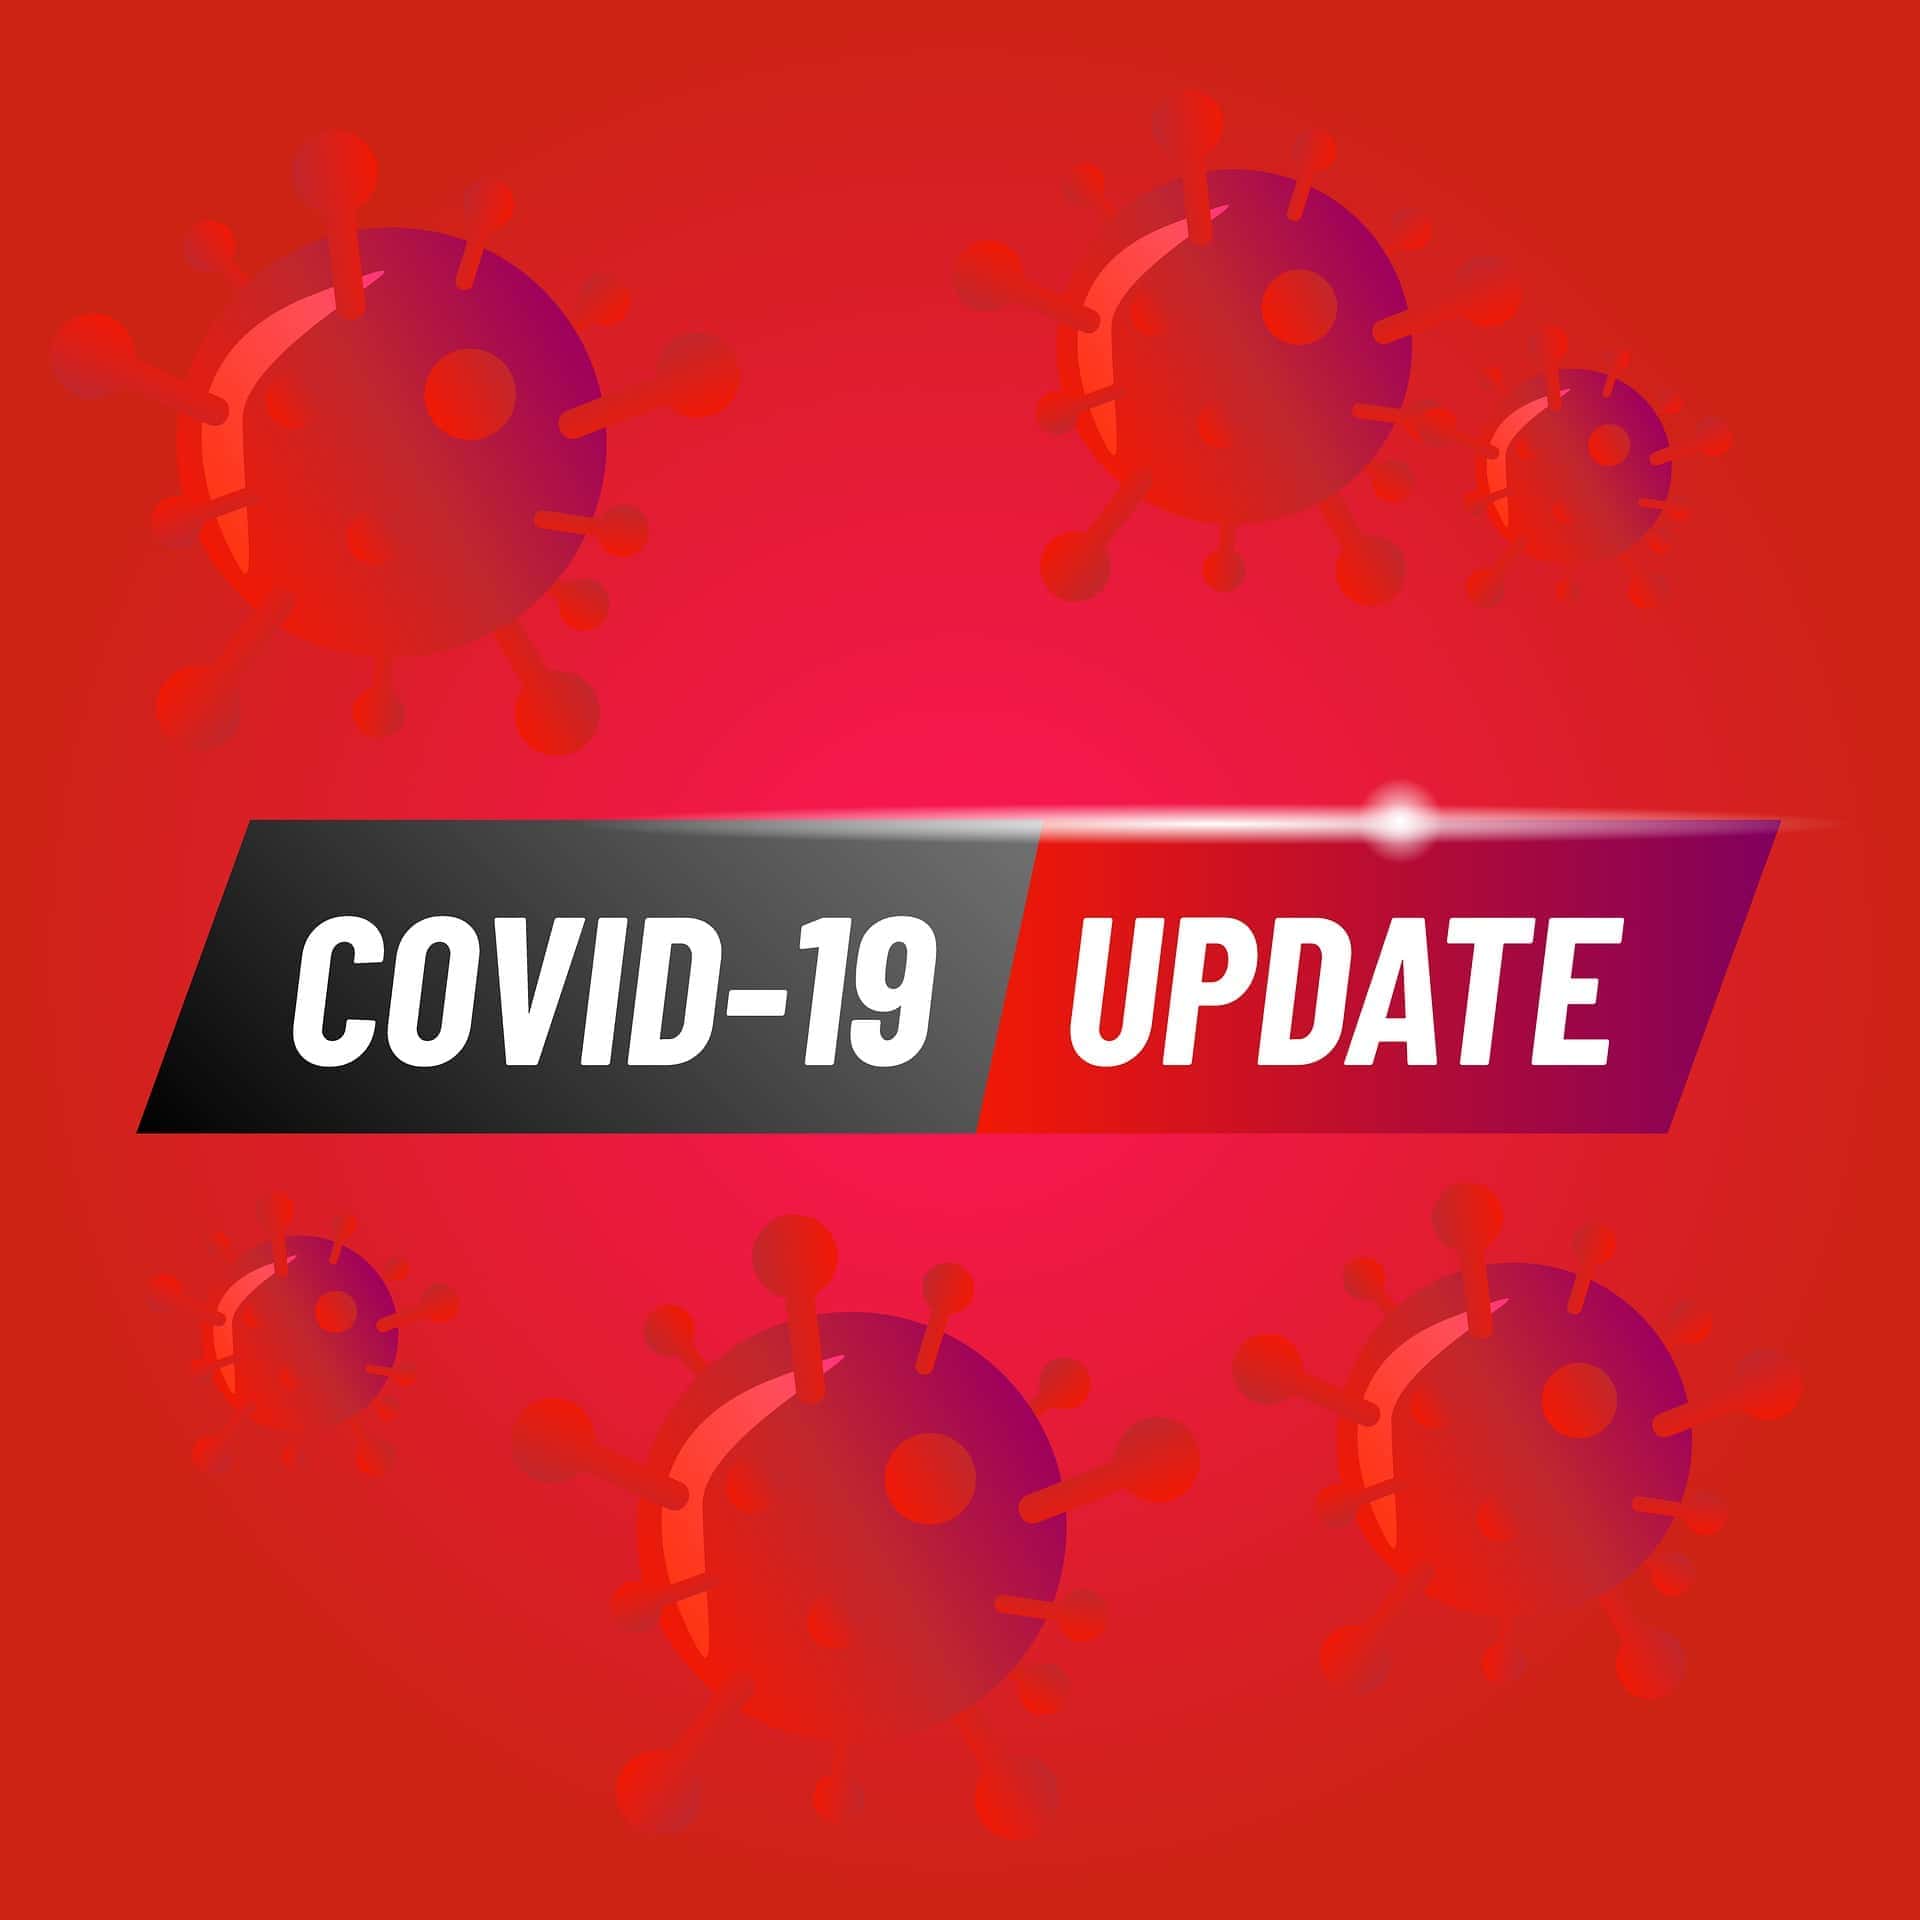 coronavirus-update-jpg-24